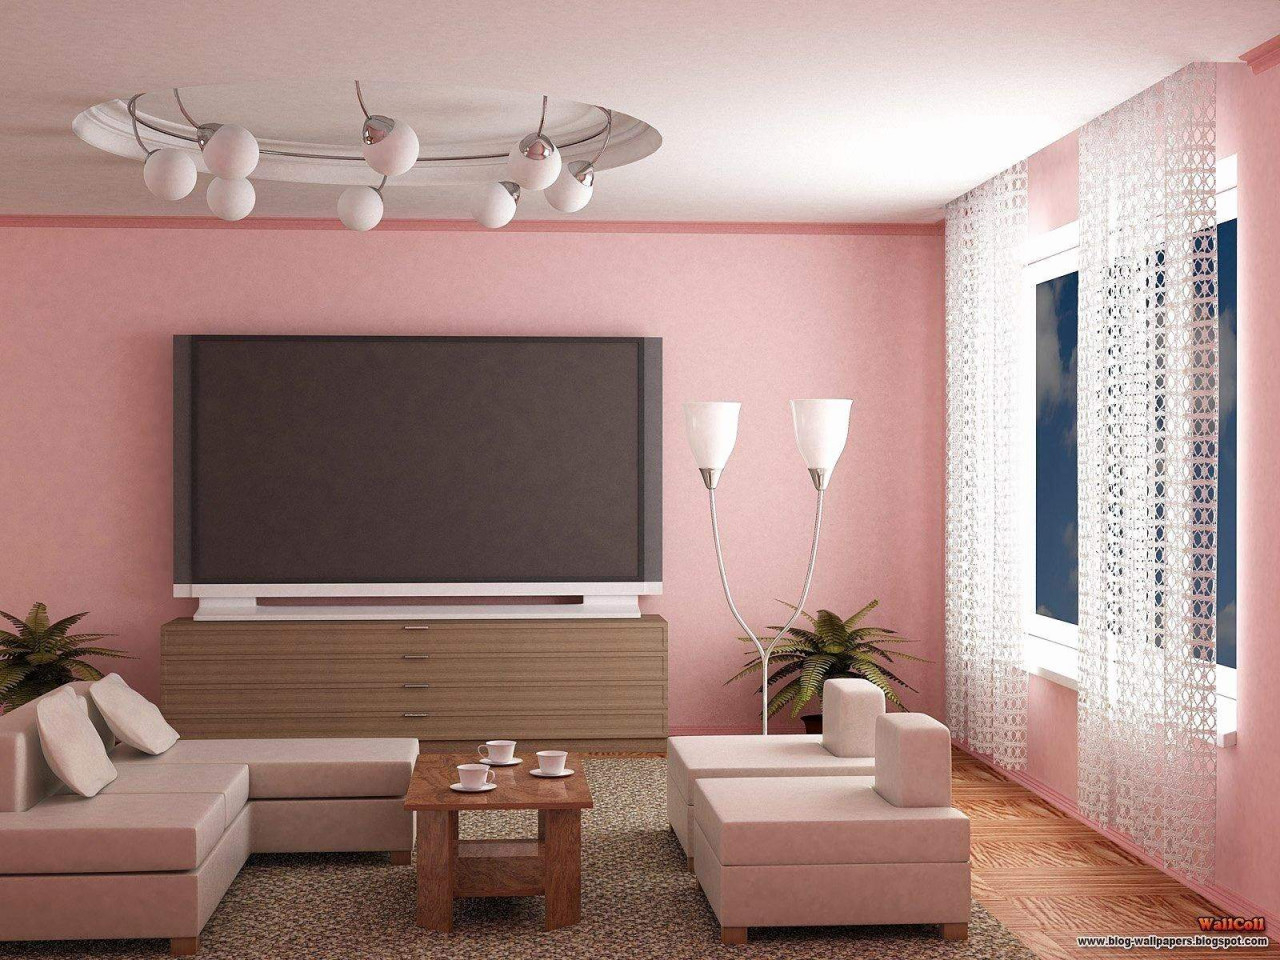 29 Genial Wohnzimmer Ideen Wandgestaltung Stein Das Beste von Wohnzimmer Wandgestaltung Ideen Bild